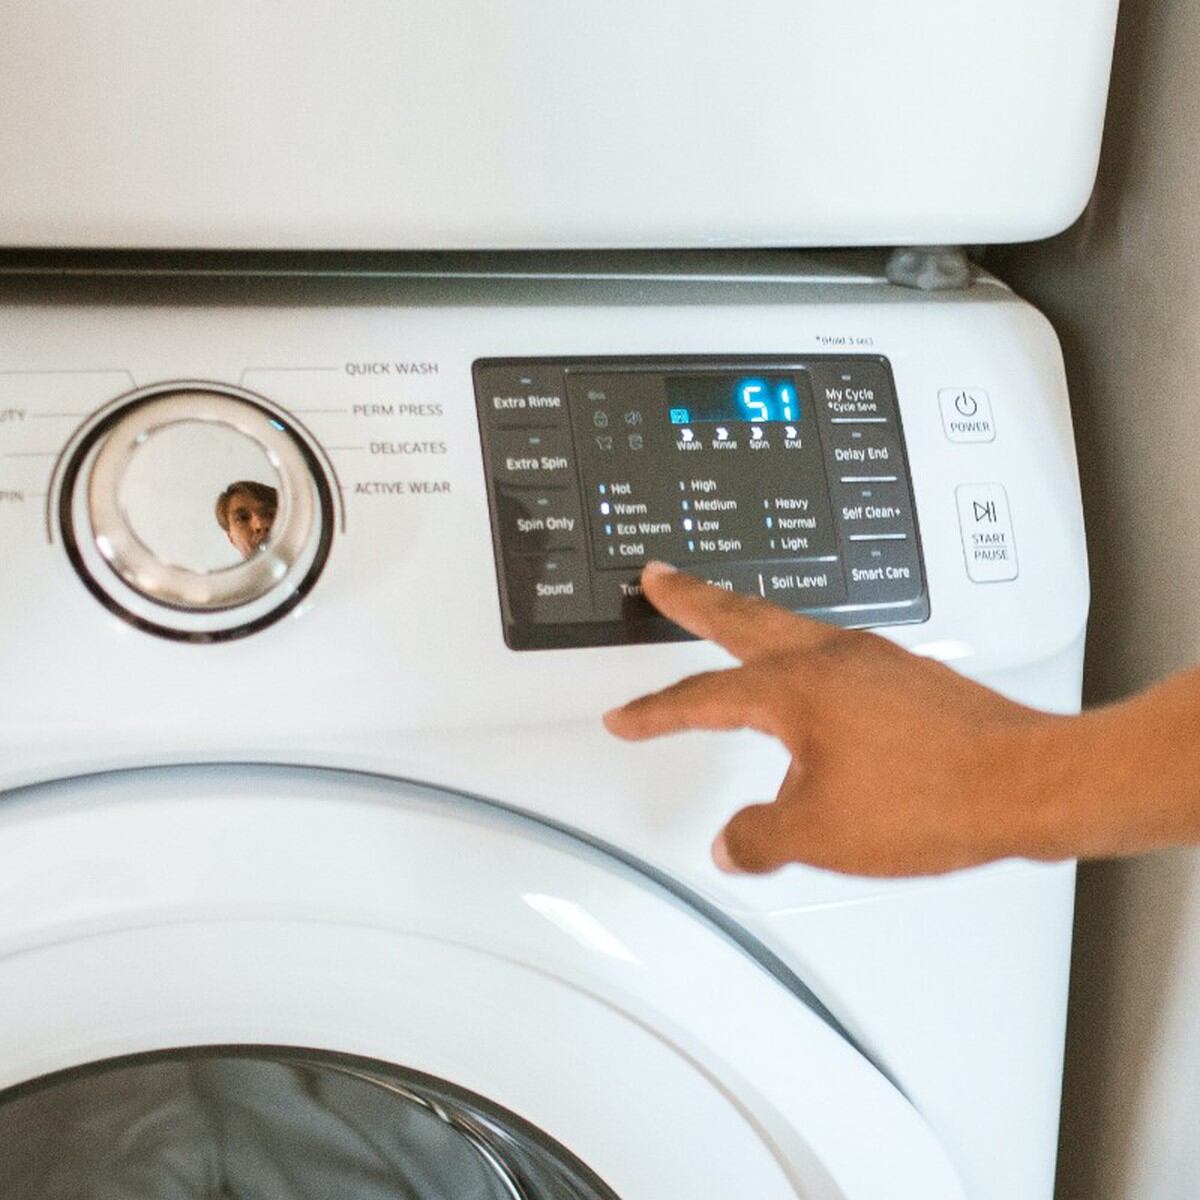 El truco para secar las prendas en el lavarropas - LA NACION